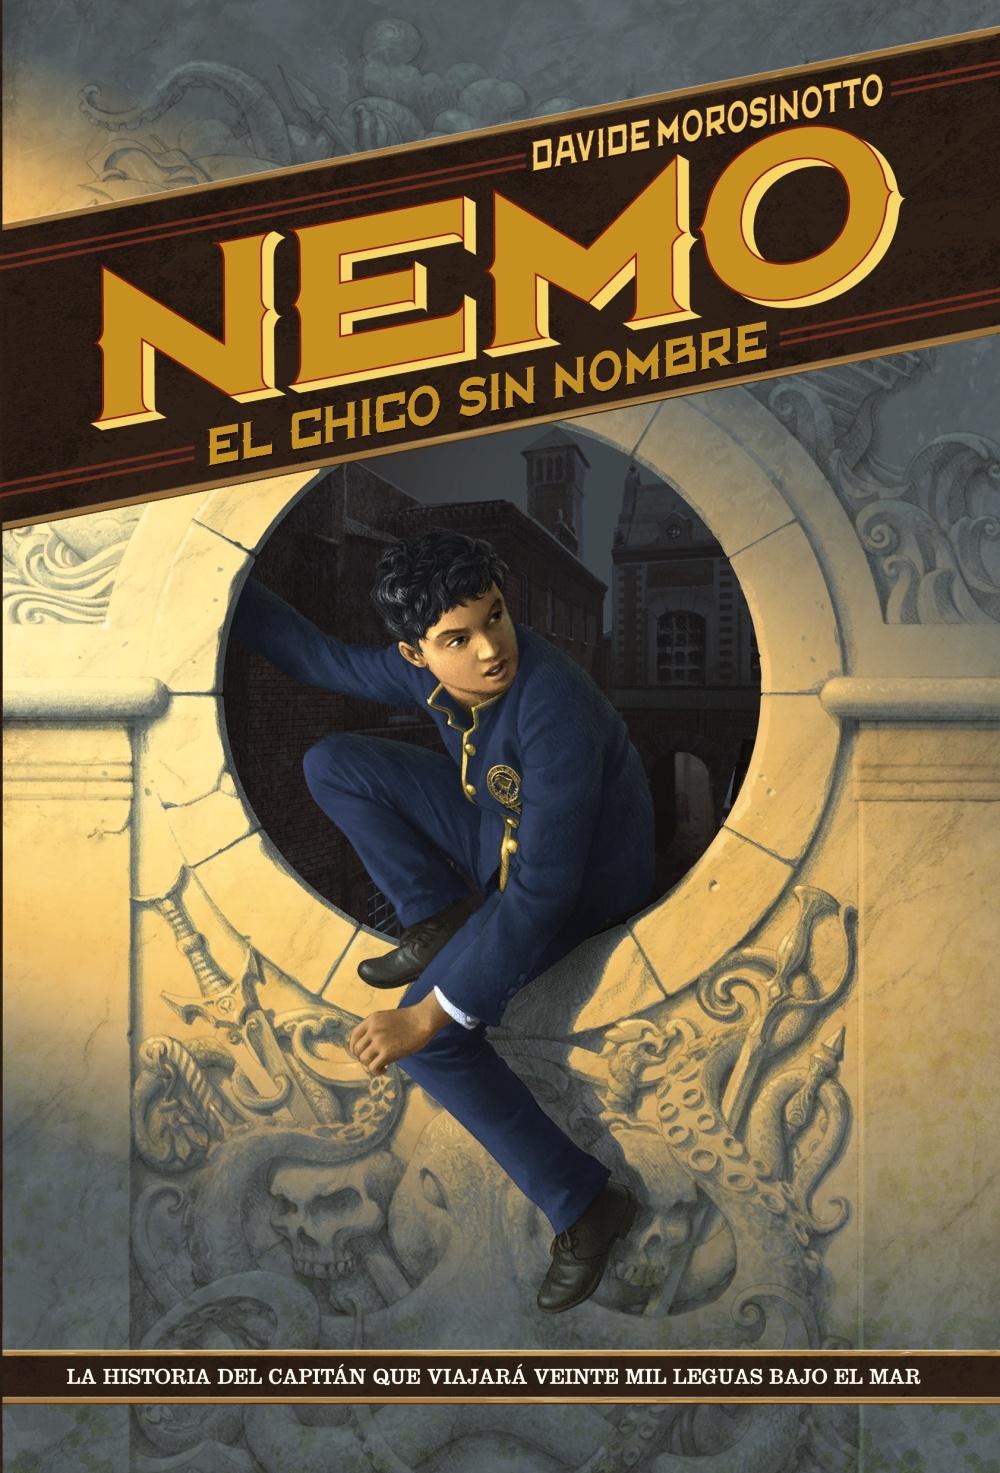 Nemo "El Chico sin Nombre". 